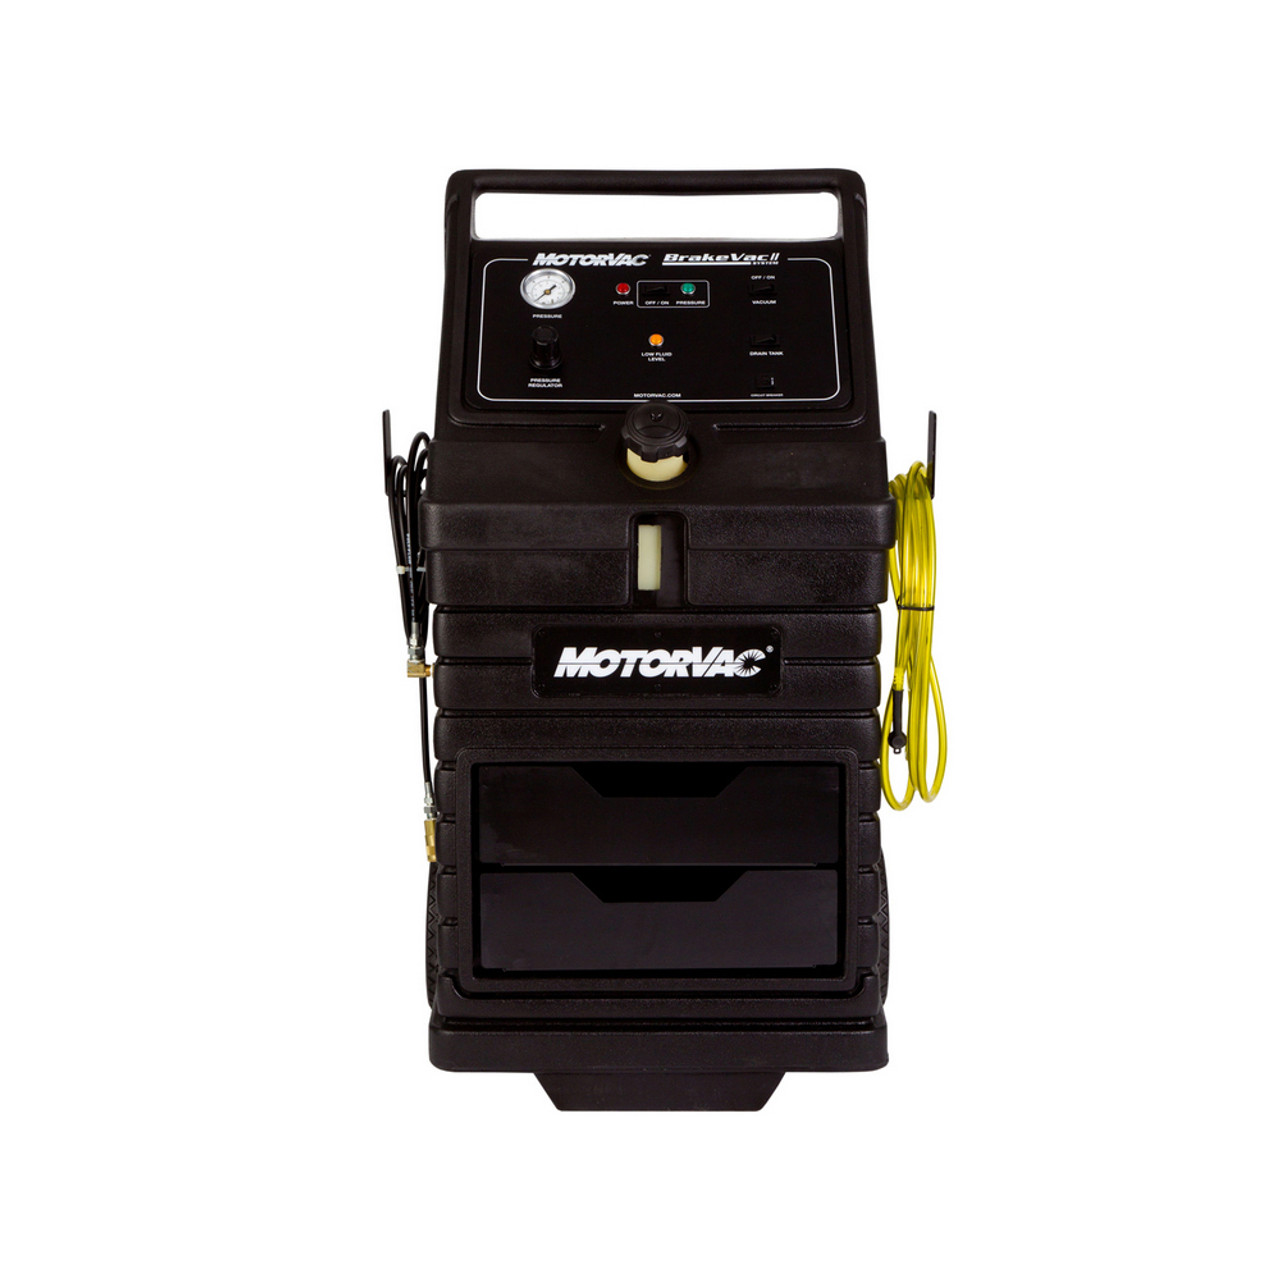 MotorVac 500-8100: BrakeVac II STD Adapters